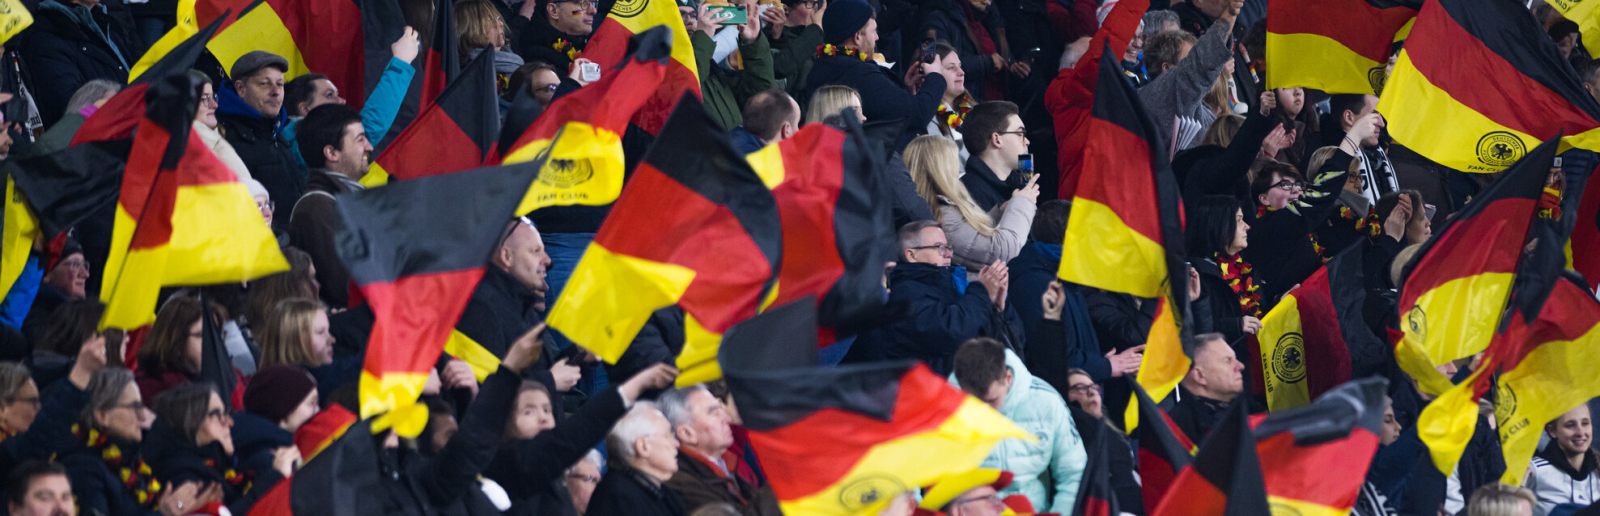 Fußball-Fans in einem Stadion mit Deutschland-Flaggen